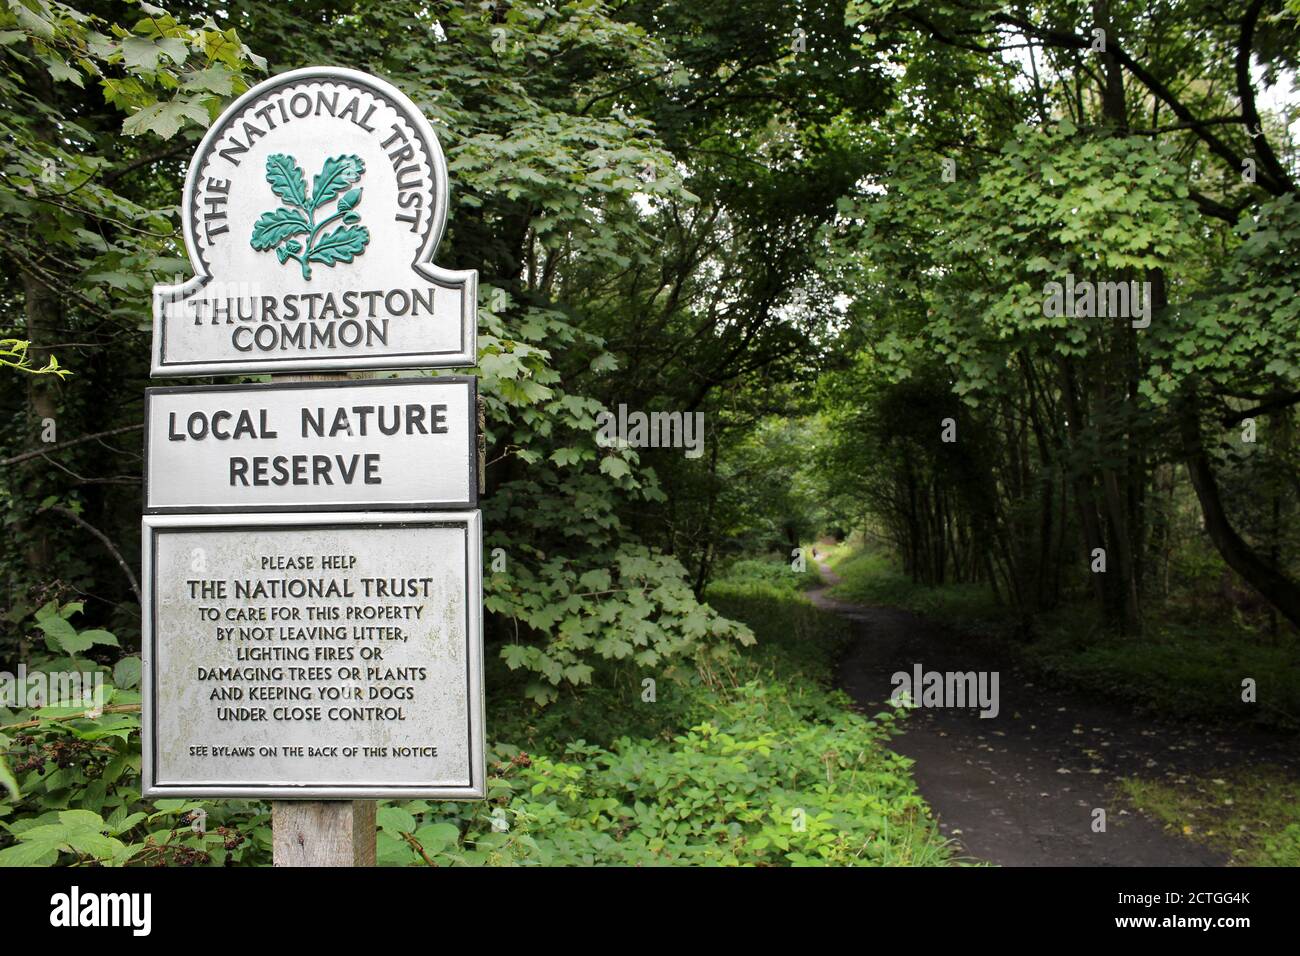 Il National Trust - Thurstaston Common Nature Reserve, Wirral, Regno Unito Foto Stock